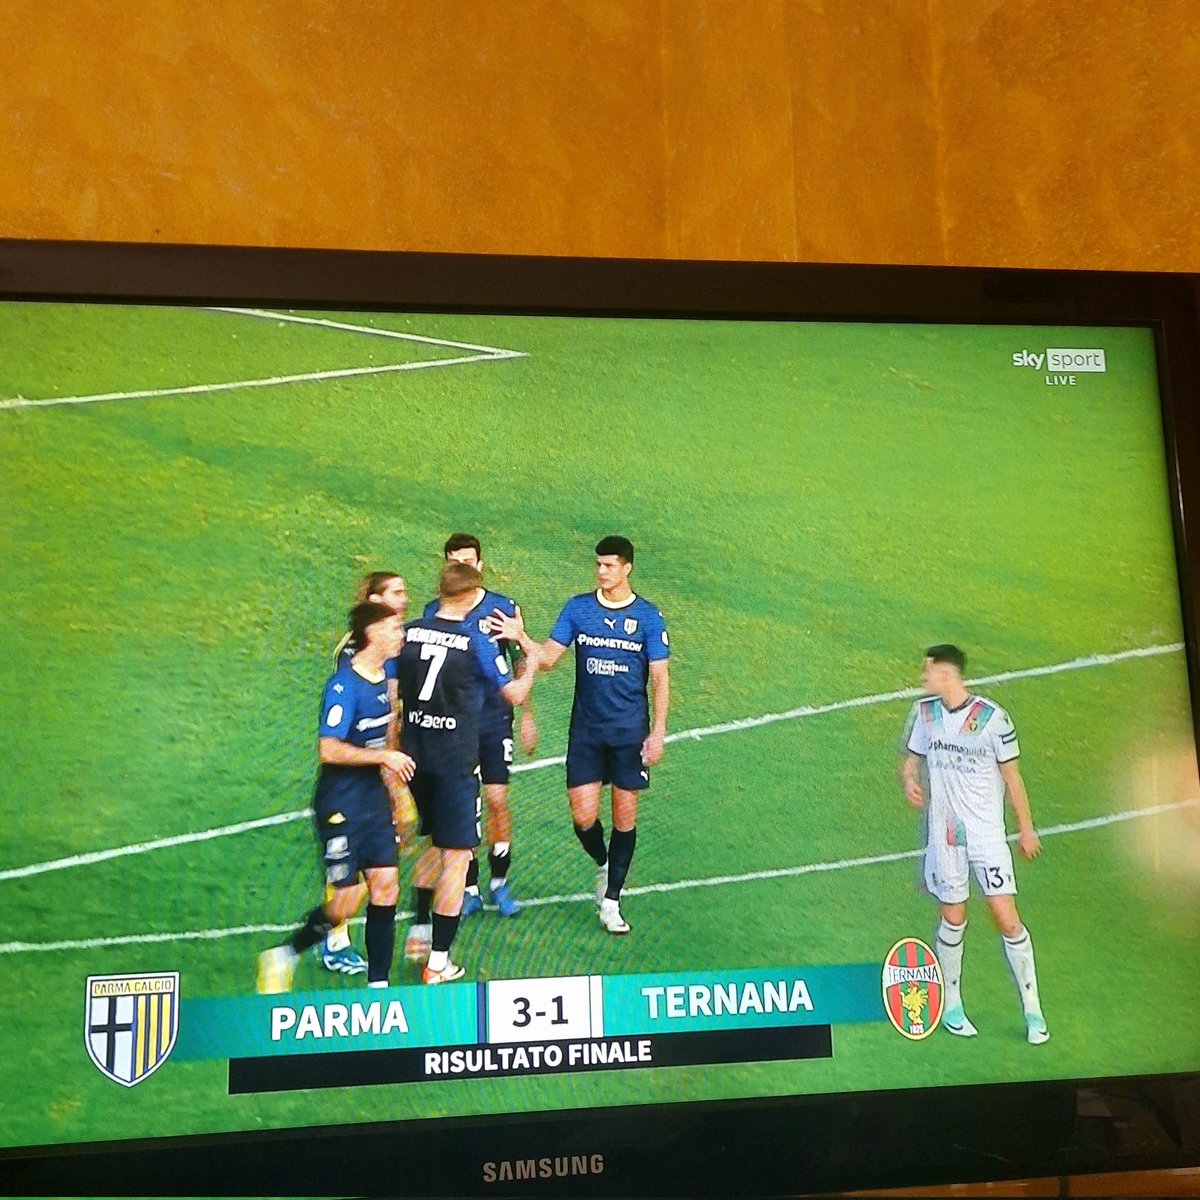 Ottima vittoria per il Parma Calcio Full time #ParmaTernana 3-1 @1913parmacalcio